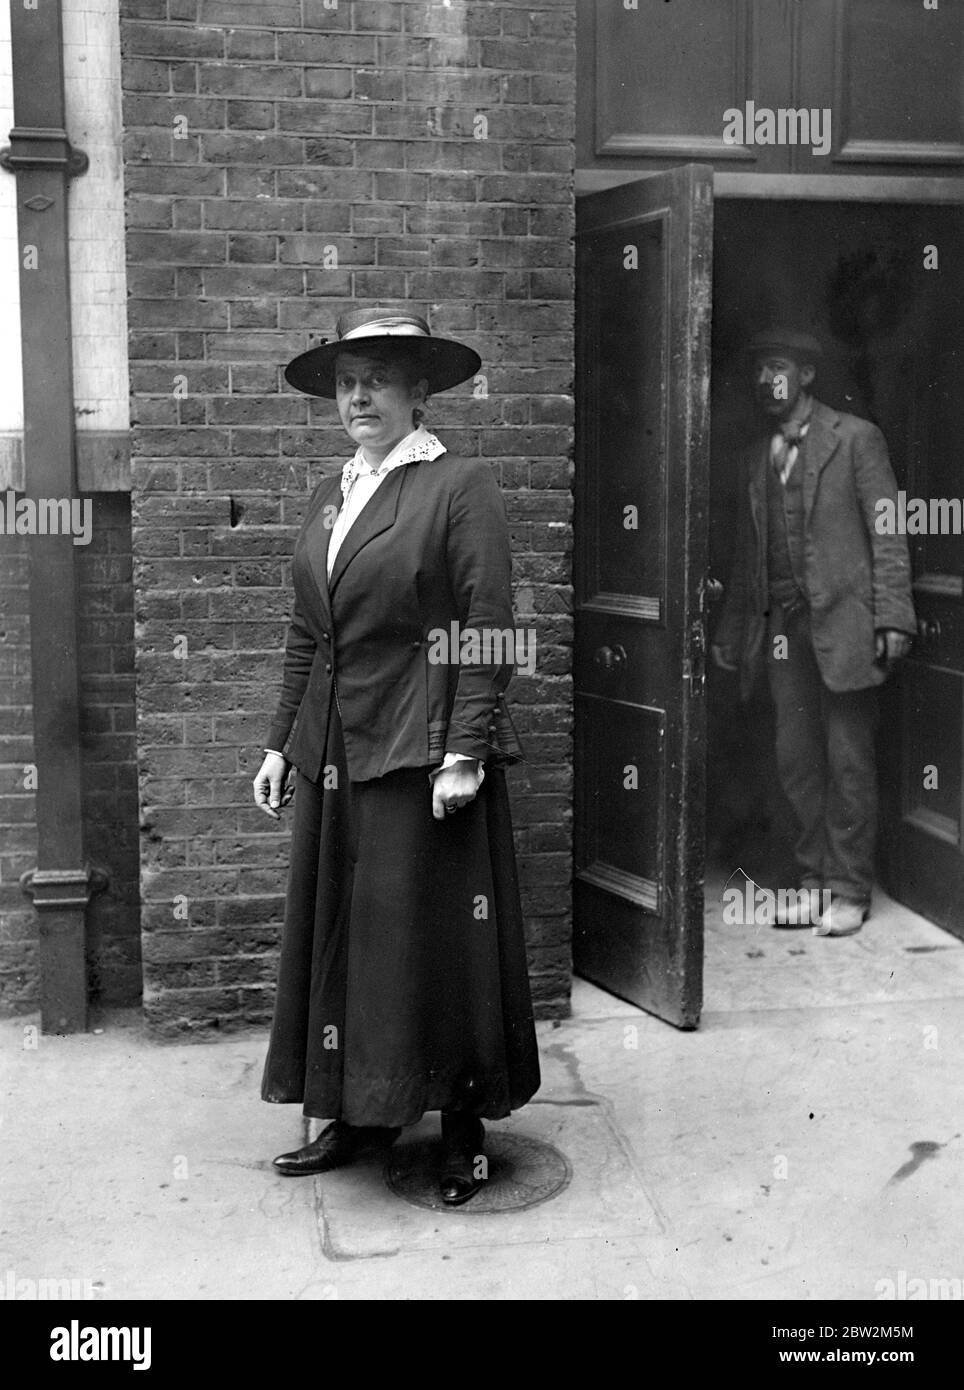 Miss Luker, die Kensington Sanitary Inspector, die den Blumenhändlern, die im Tal leben, als die "vollendetete" Dame bekannt ist, nicht, dass sie Opfer der Krankheit ist, von der sie ertränkt ist, sondern als ein Team von Verliebtheit. 29. September 1916 Stockfoto